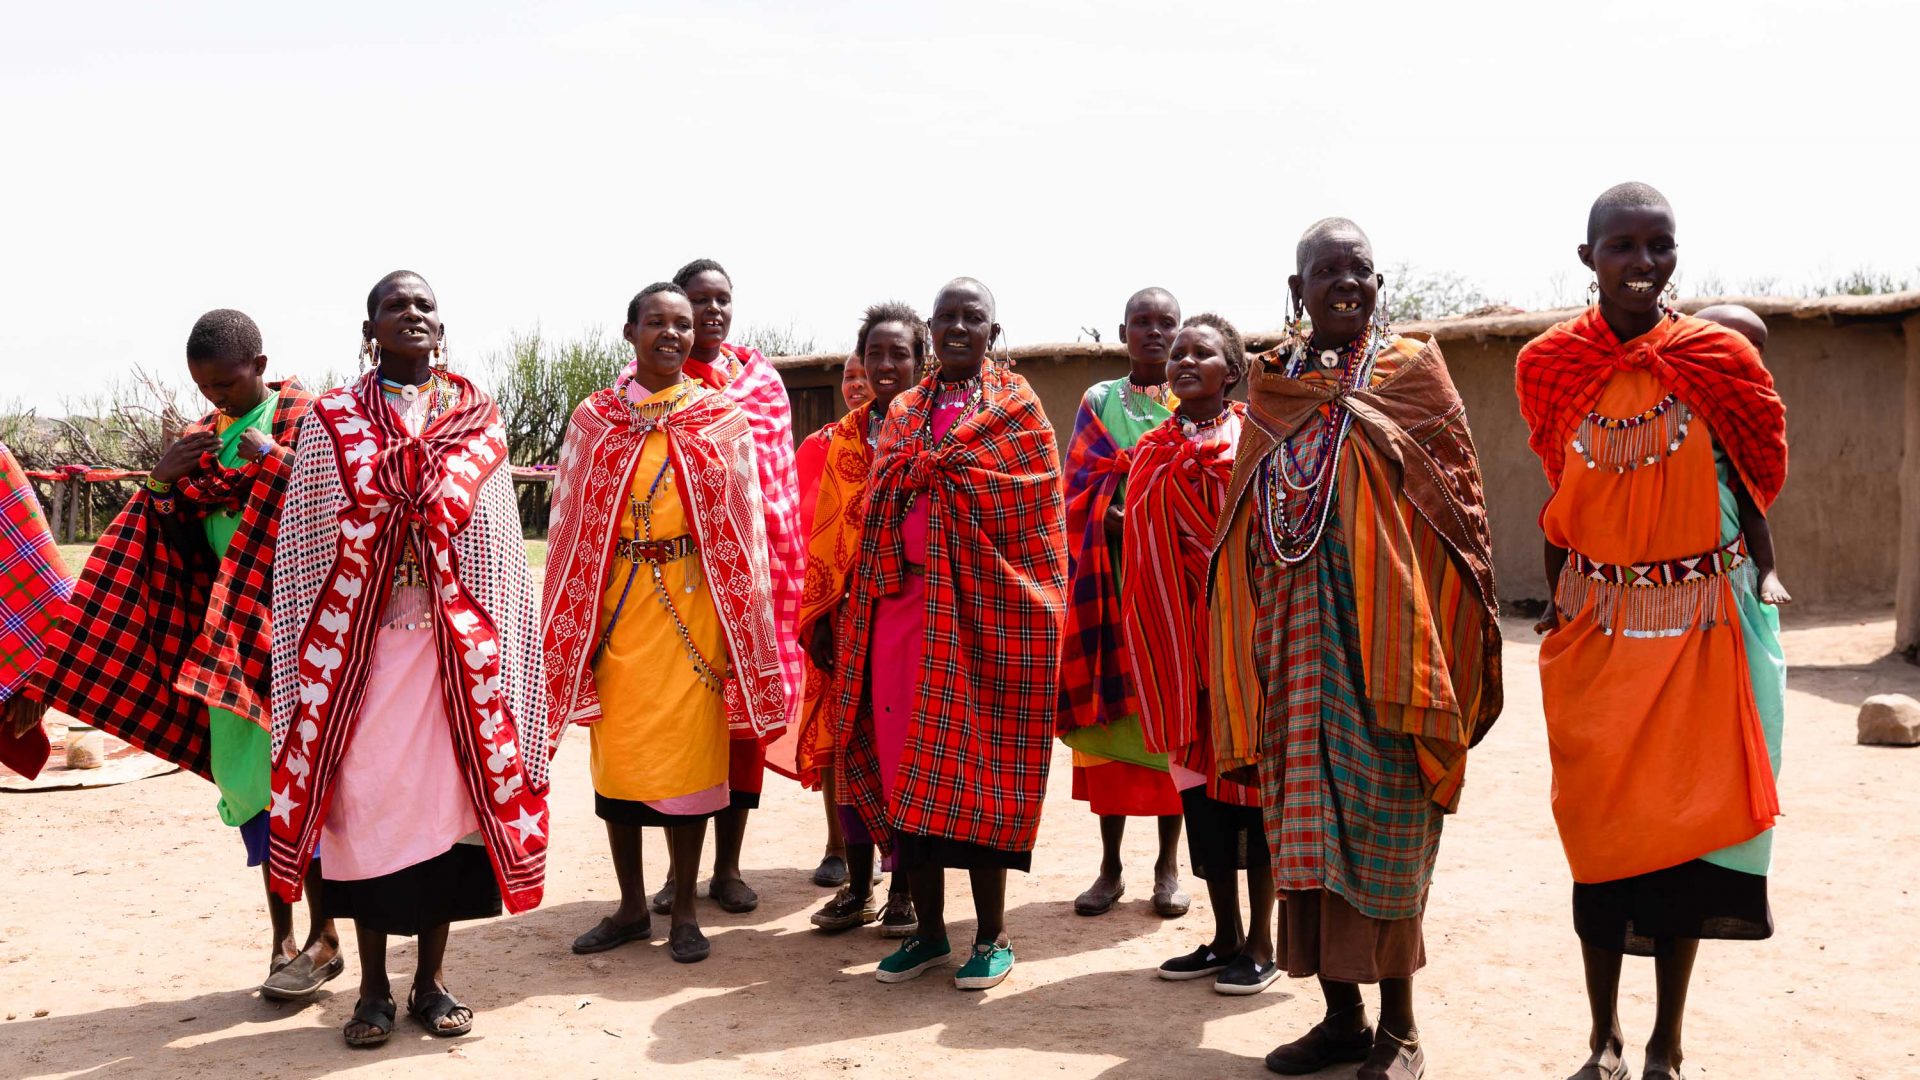 The Maasai school teacher using tourism to empower women